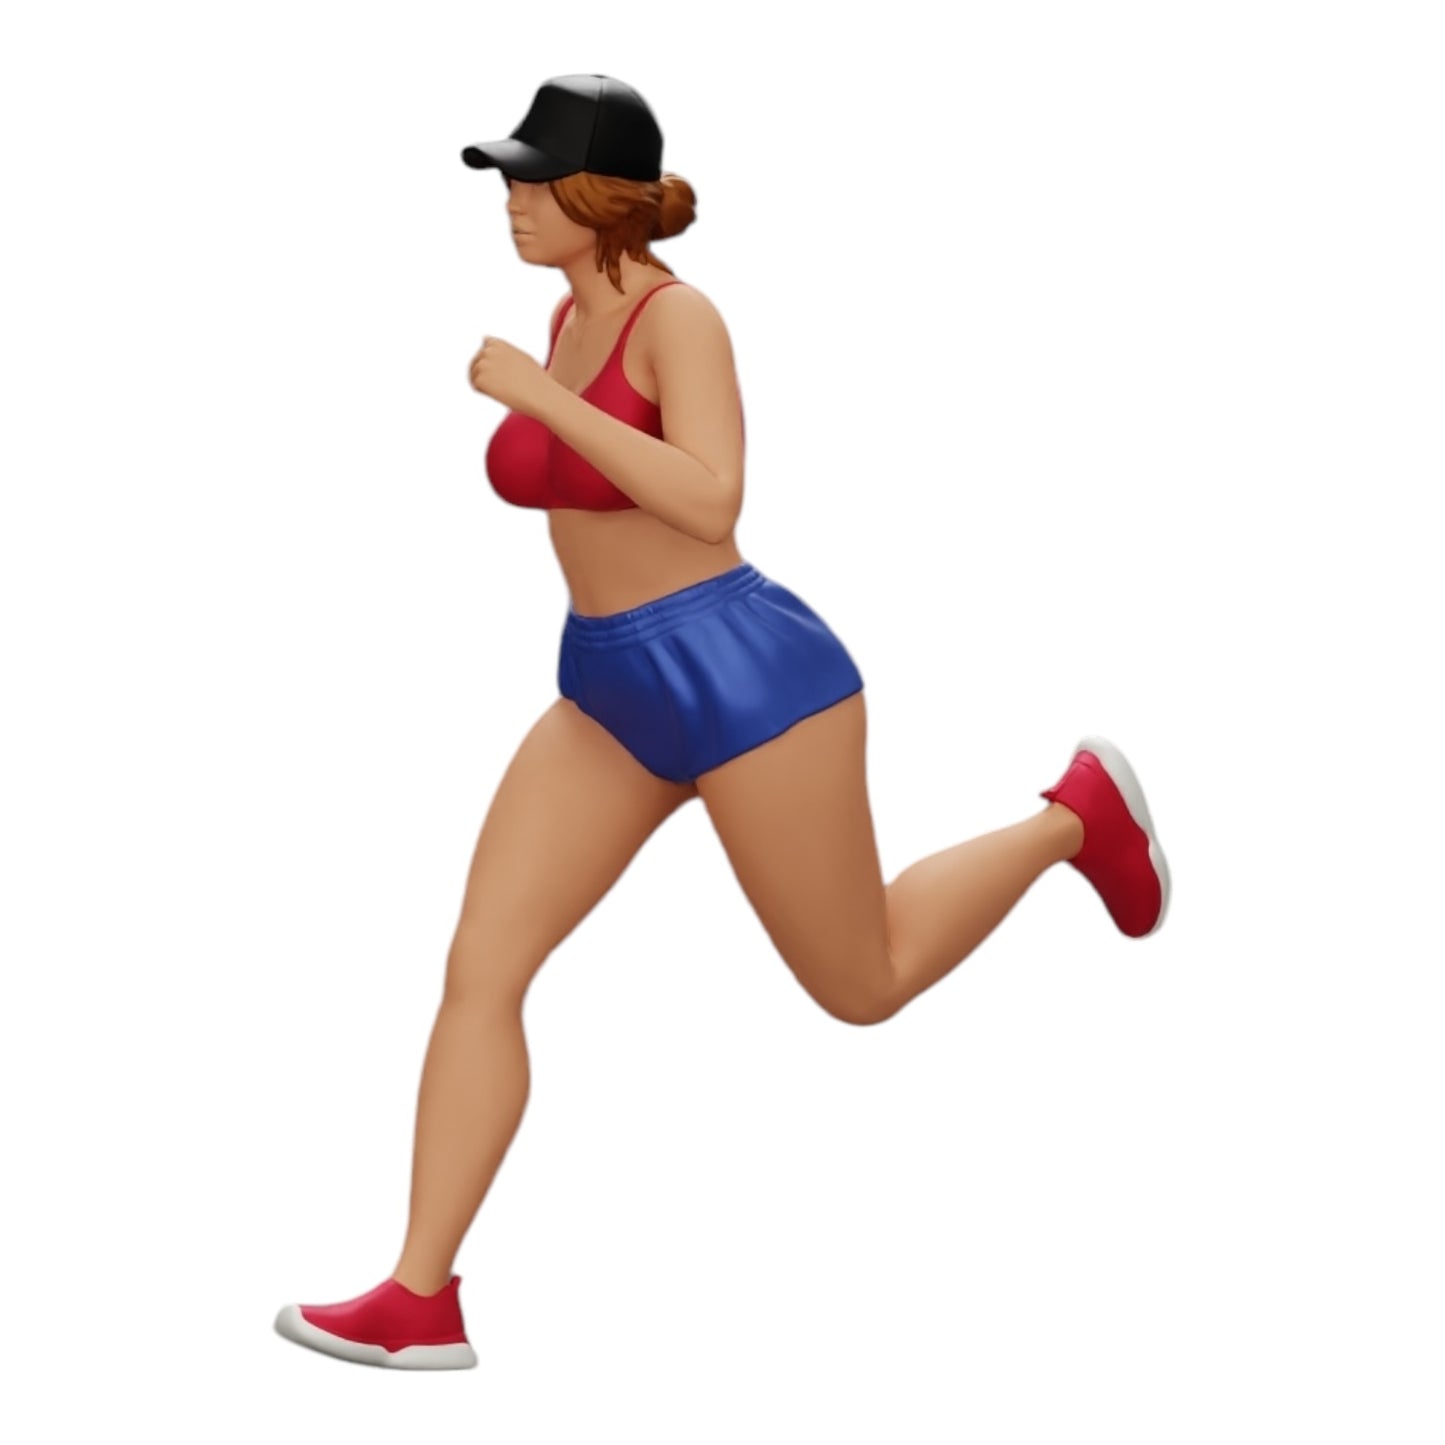 Diorama Modellbau Produktfoto 0: Joggerin/ Sportlerin läuft in Shorts und Mütze (Ref Nr. A45)